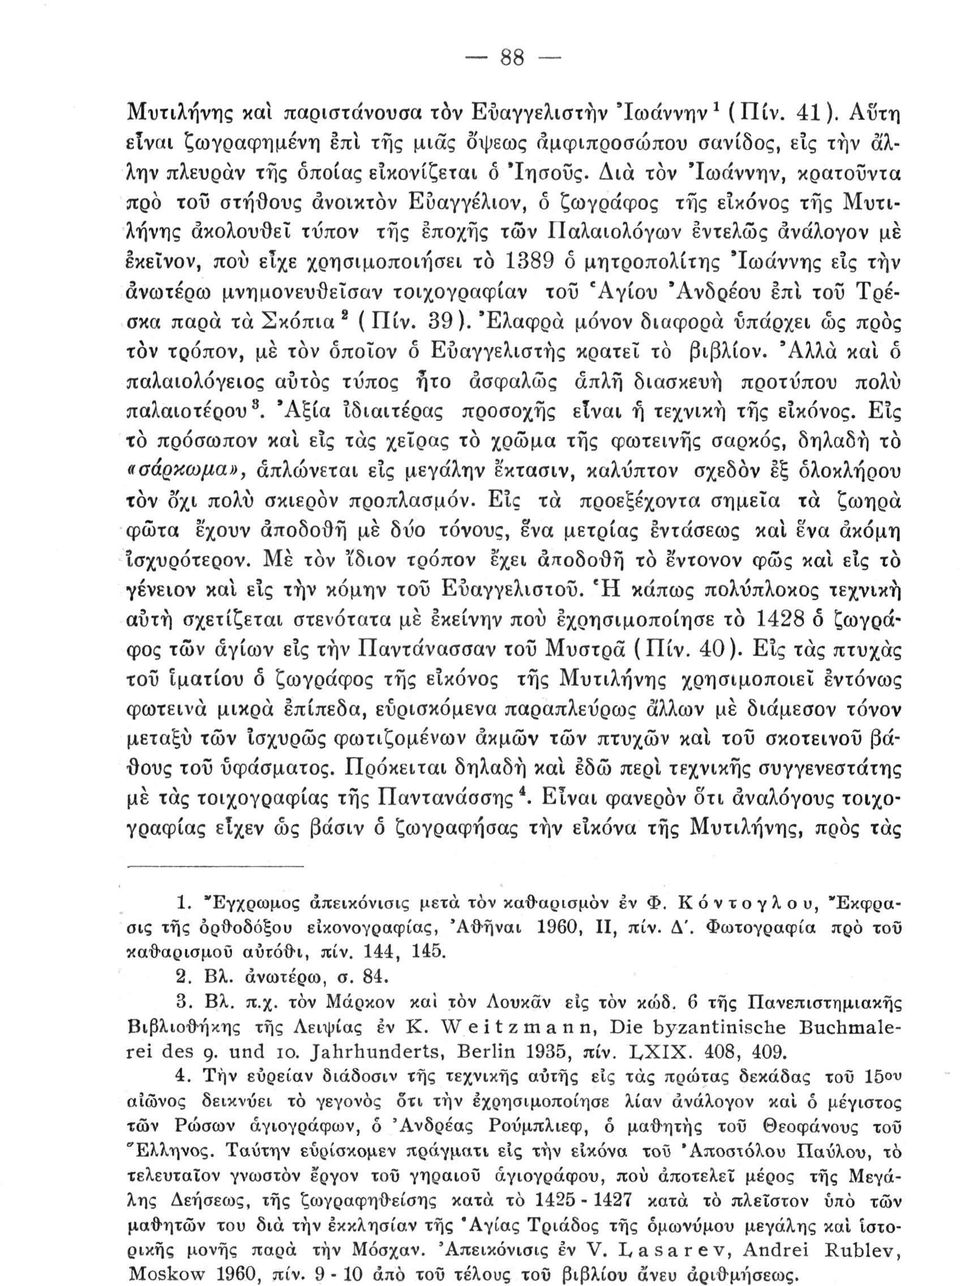 1389 δ μητροπολίτης 'Ιωάννης εις την ανωτέρω μνημονευθεΐσαν τοιχογραφίαν τοΰ Αγίου 'Ανδρέου επί τοΰ Τρέσκα παρά τα Σκόπια s ( Πίν. 39 ).